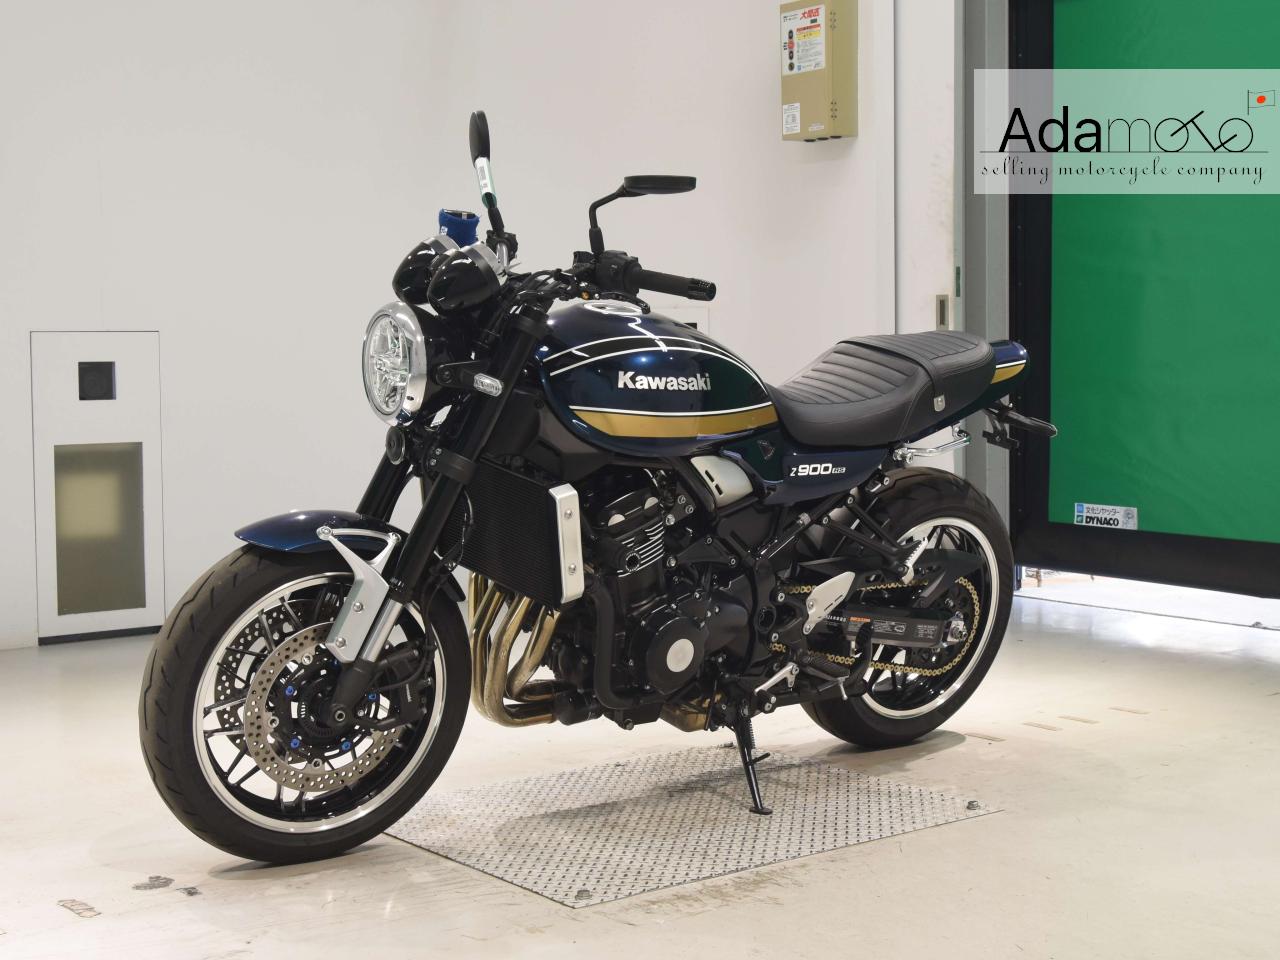 Kawasaki Z900RS - Adamoto - Motorcycles from Japan